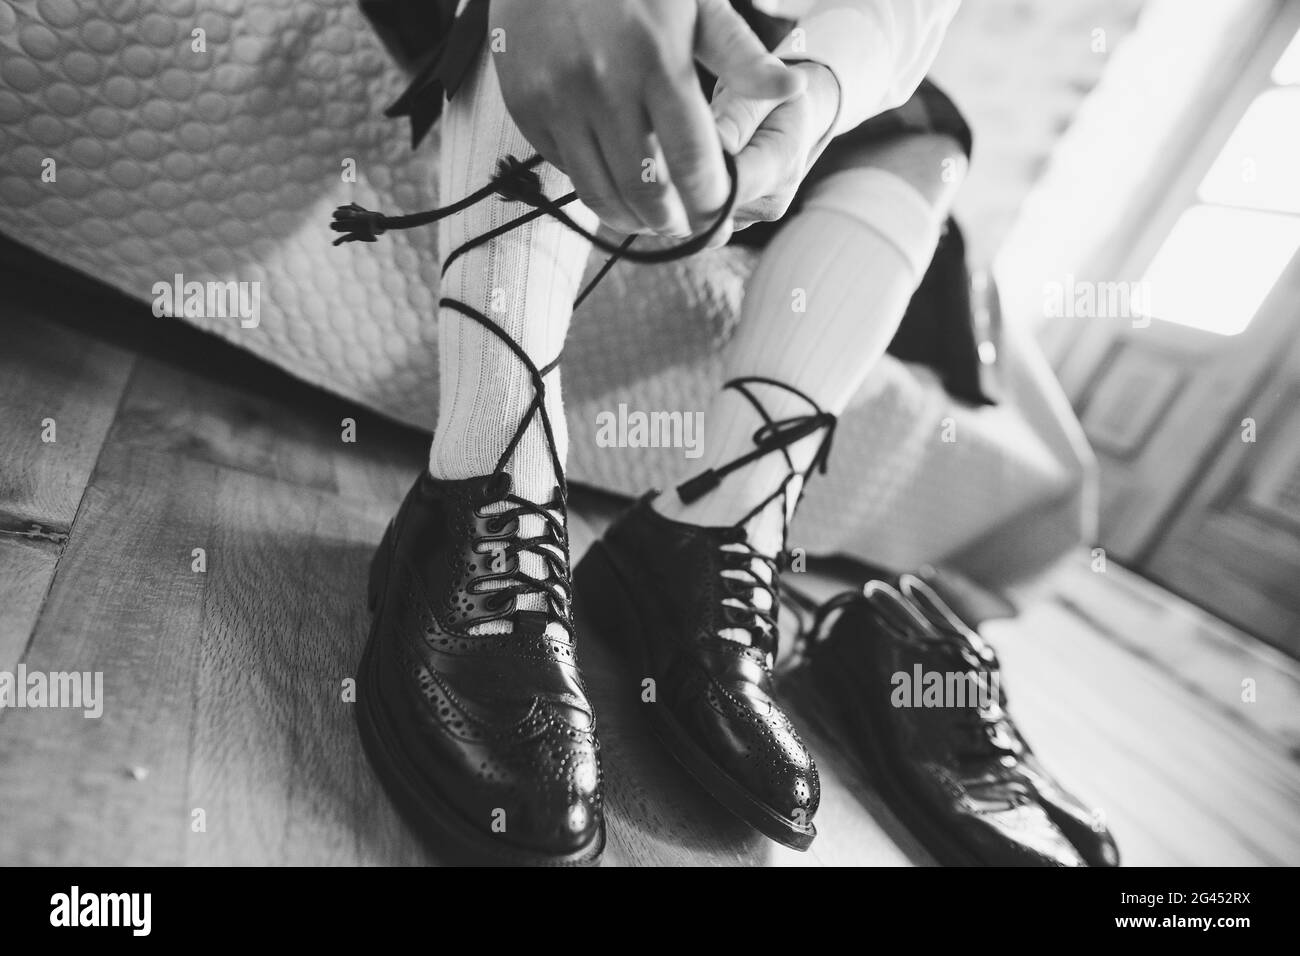 Vorbereitung auf eine schottische Hochzeit. Mann in einem Kilt und hohen  Socken sitzt auf dem Bett und binden lange Schnürsenkel an seine Schuhe.  Schwarz und WH Stockfotografie - Alamy